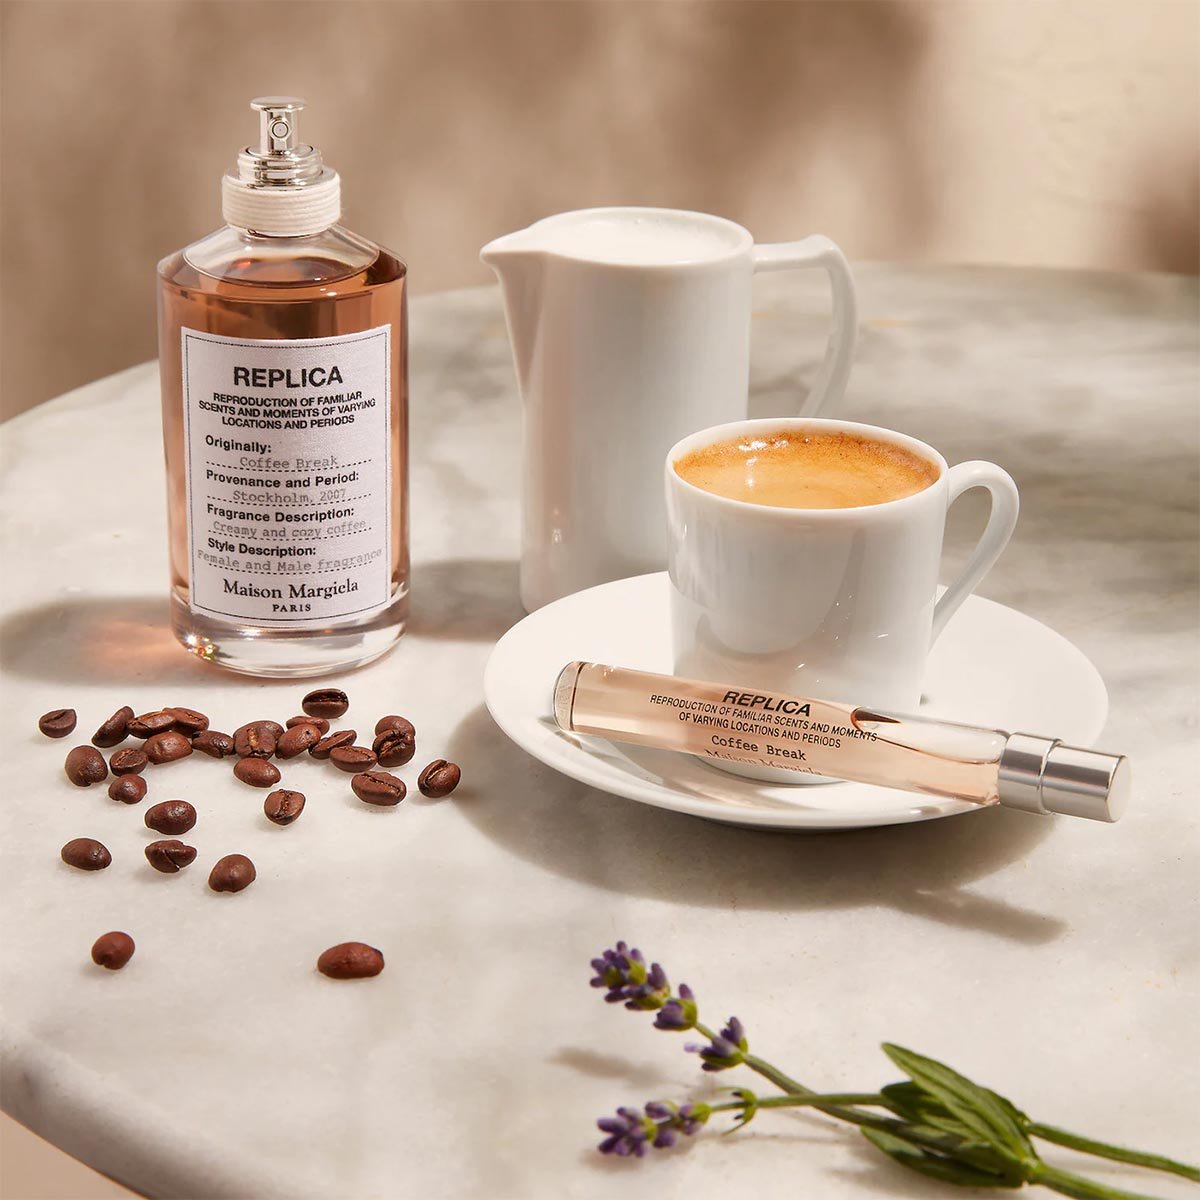 Maison Margiela 'Replica' Coffee Break EDT | My Perfume Shop Australia